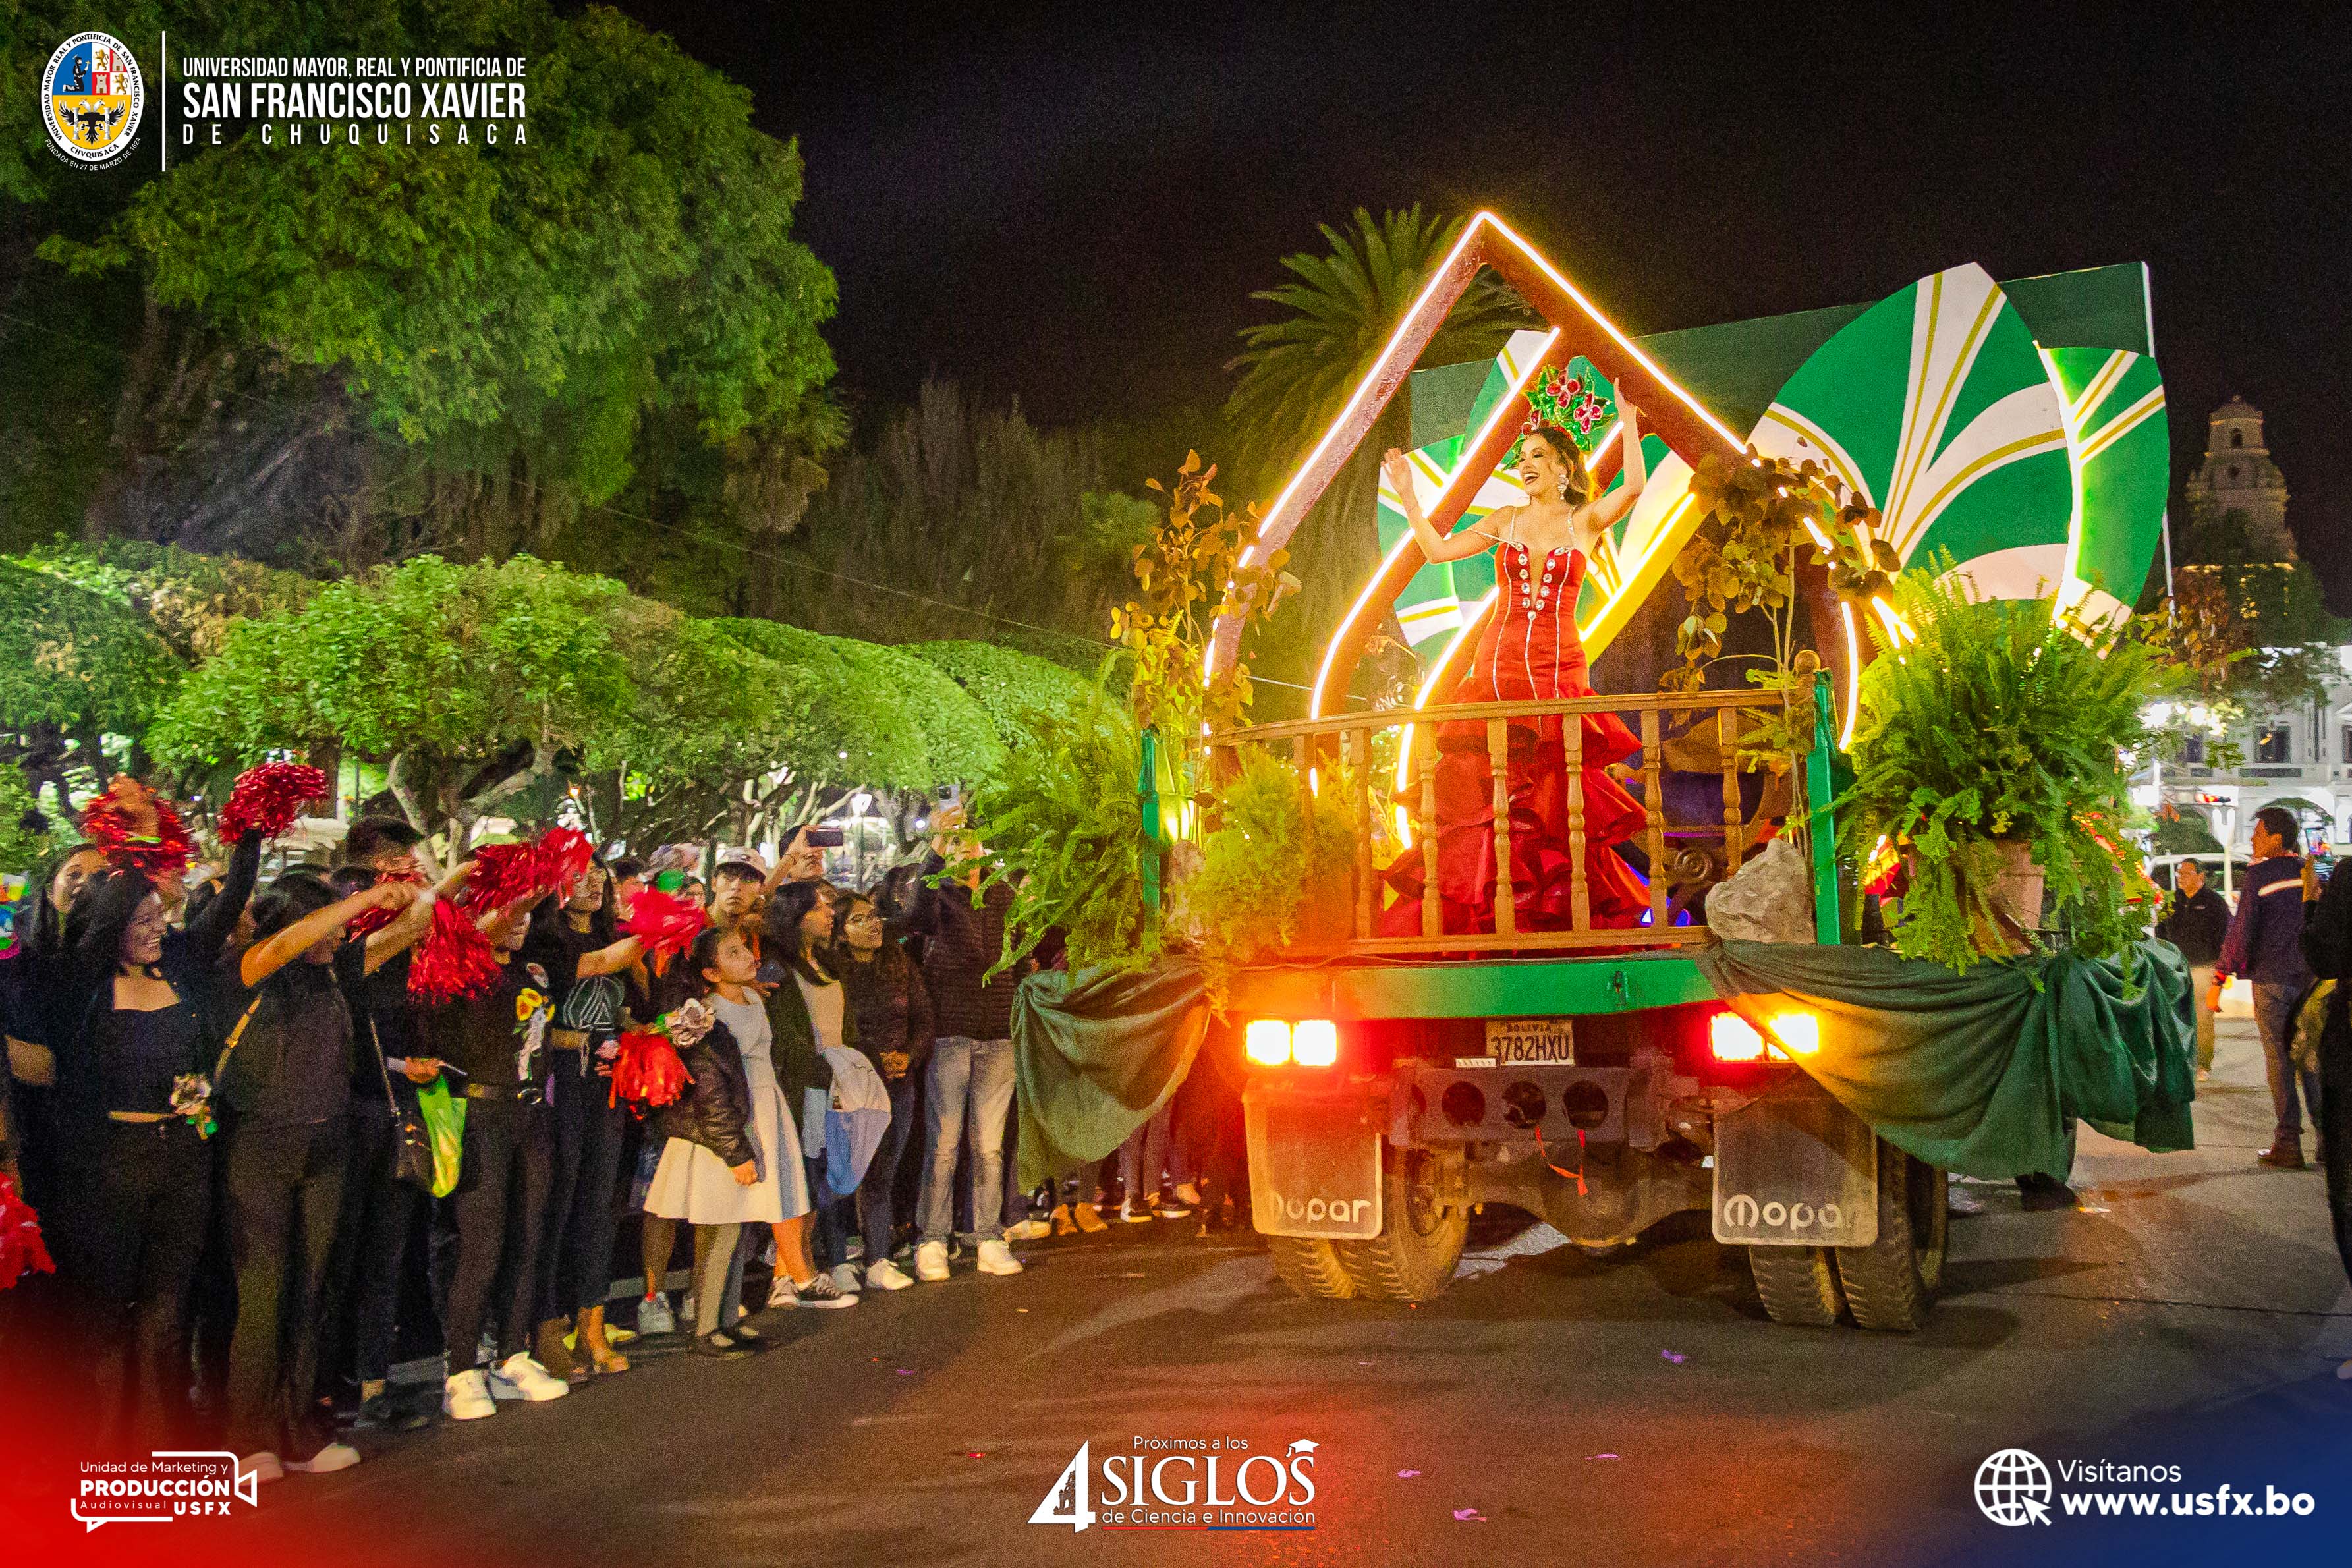 El primer desfile y concurso de carros alegóricos Primavera 2023 de la USFX, causo enorme expectativa y ovación del publico apostado a lo largo del recorrido en Sucre